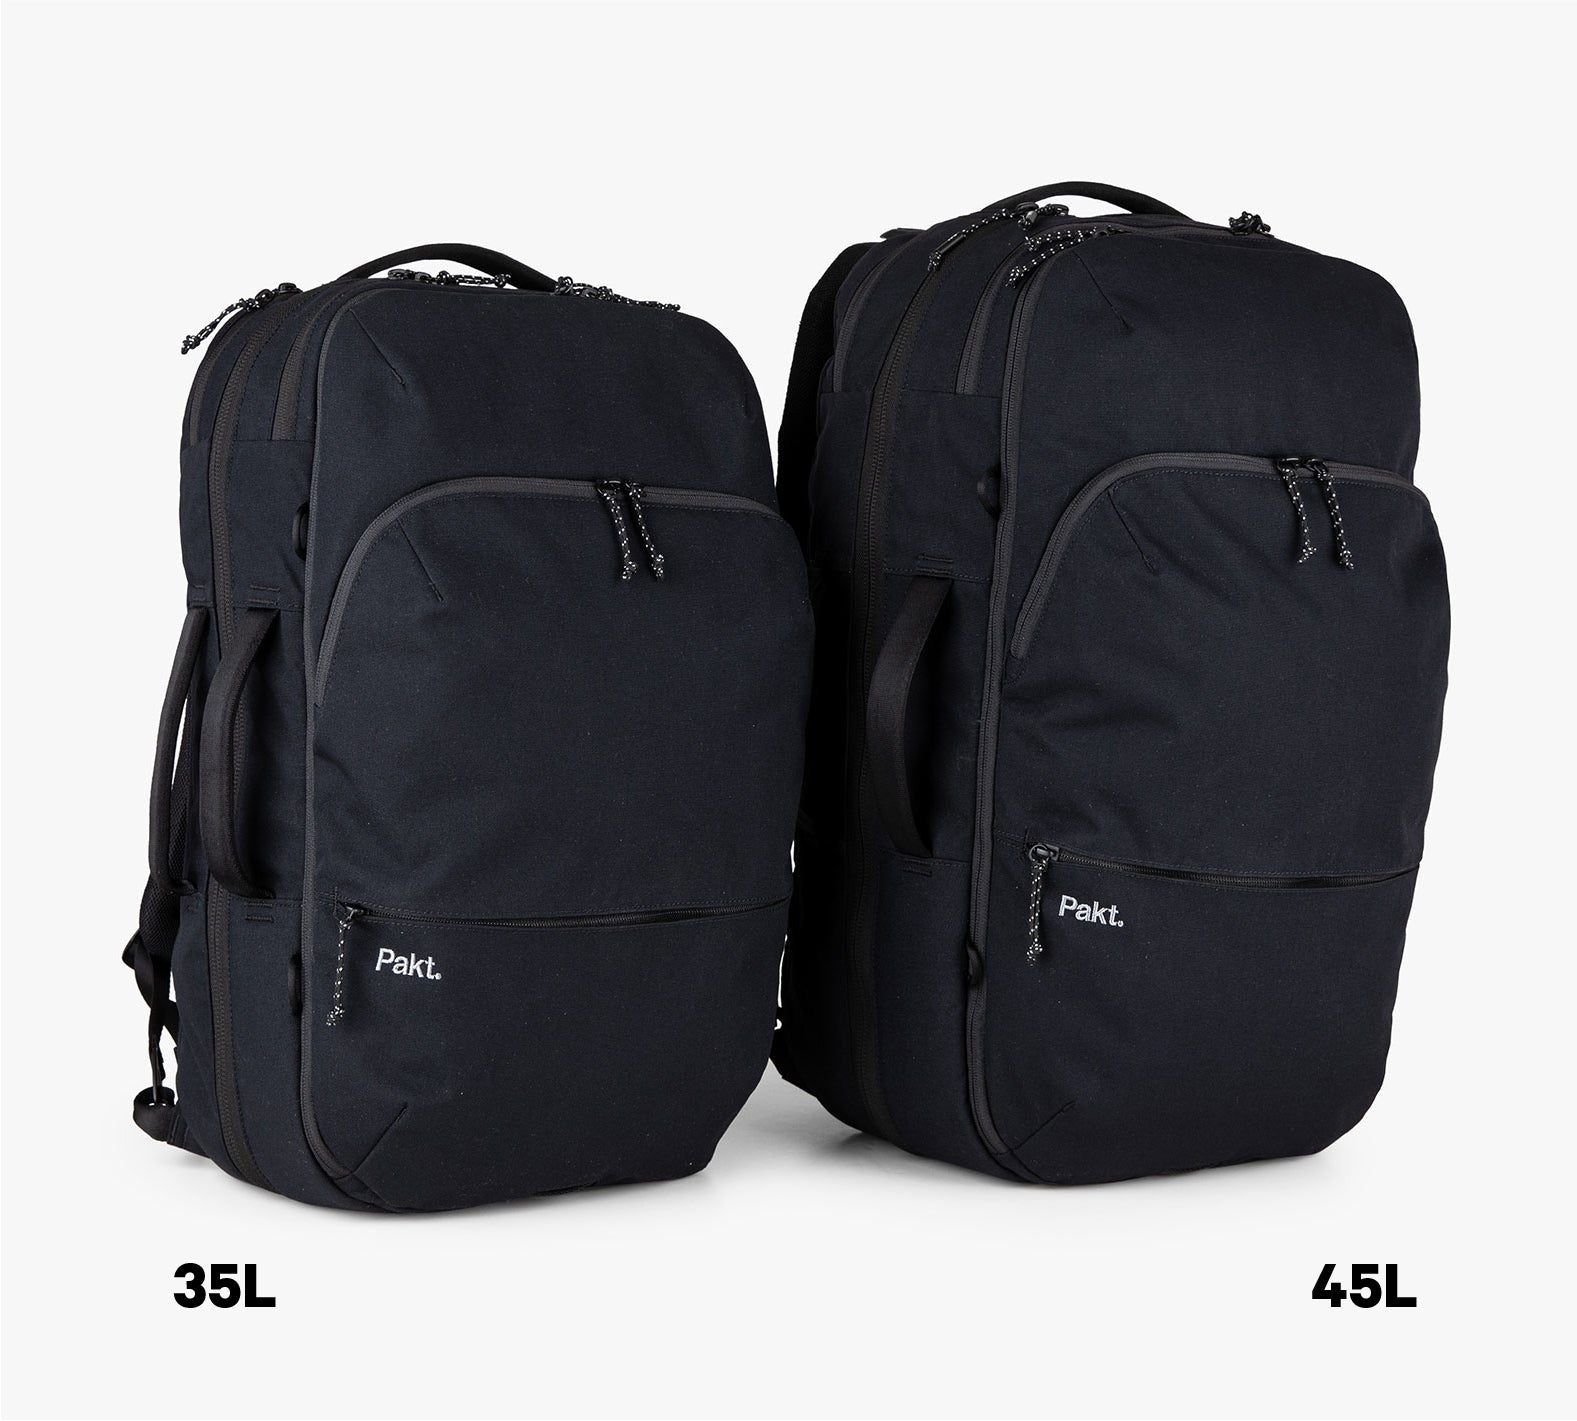 Two black travel backpacks